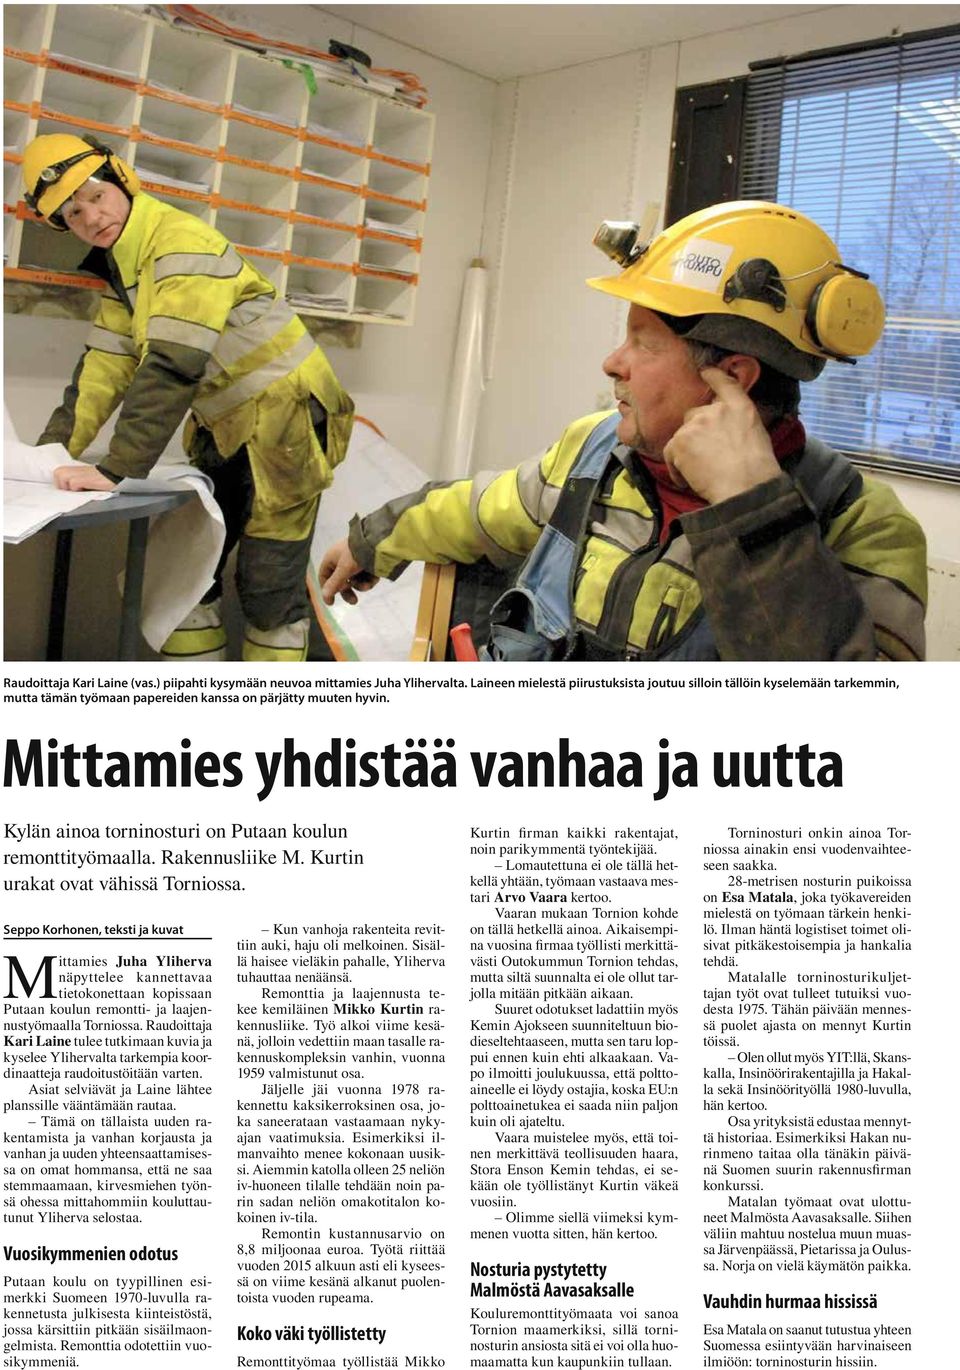 Mittamies yhdistää vanhaa ja uutta Kylän ainoa torninosturi on Putaan koulun remonttityömaalla. Rakennusliike M. Kurtin urakat ovat vähissä Torniossa.